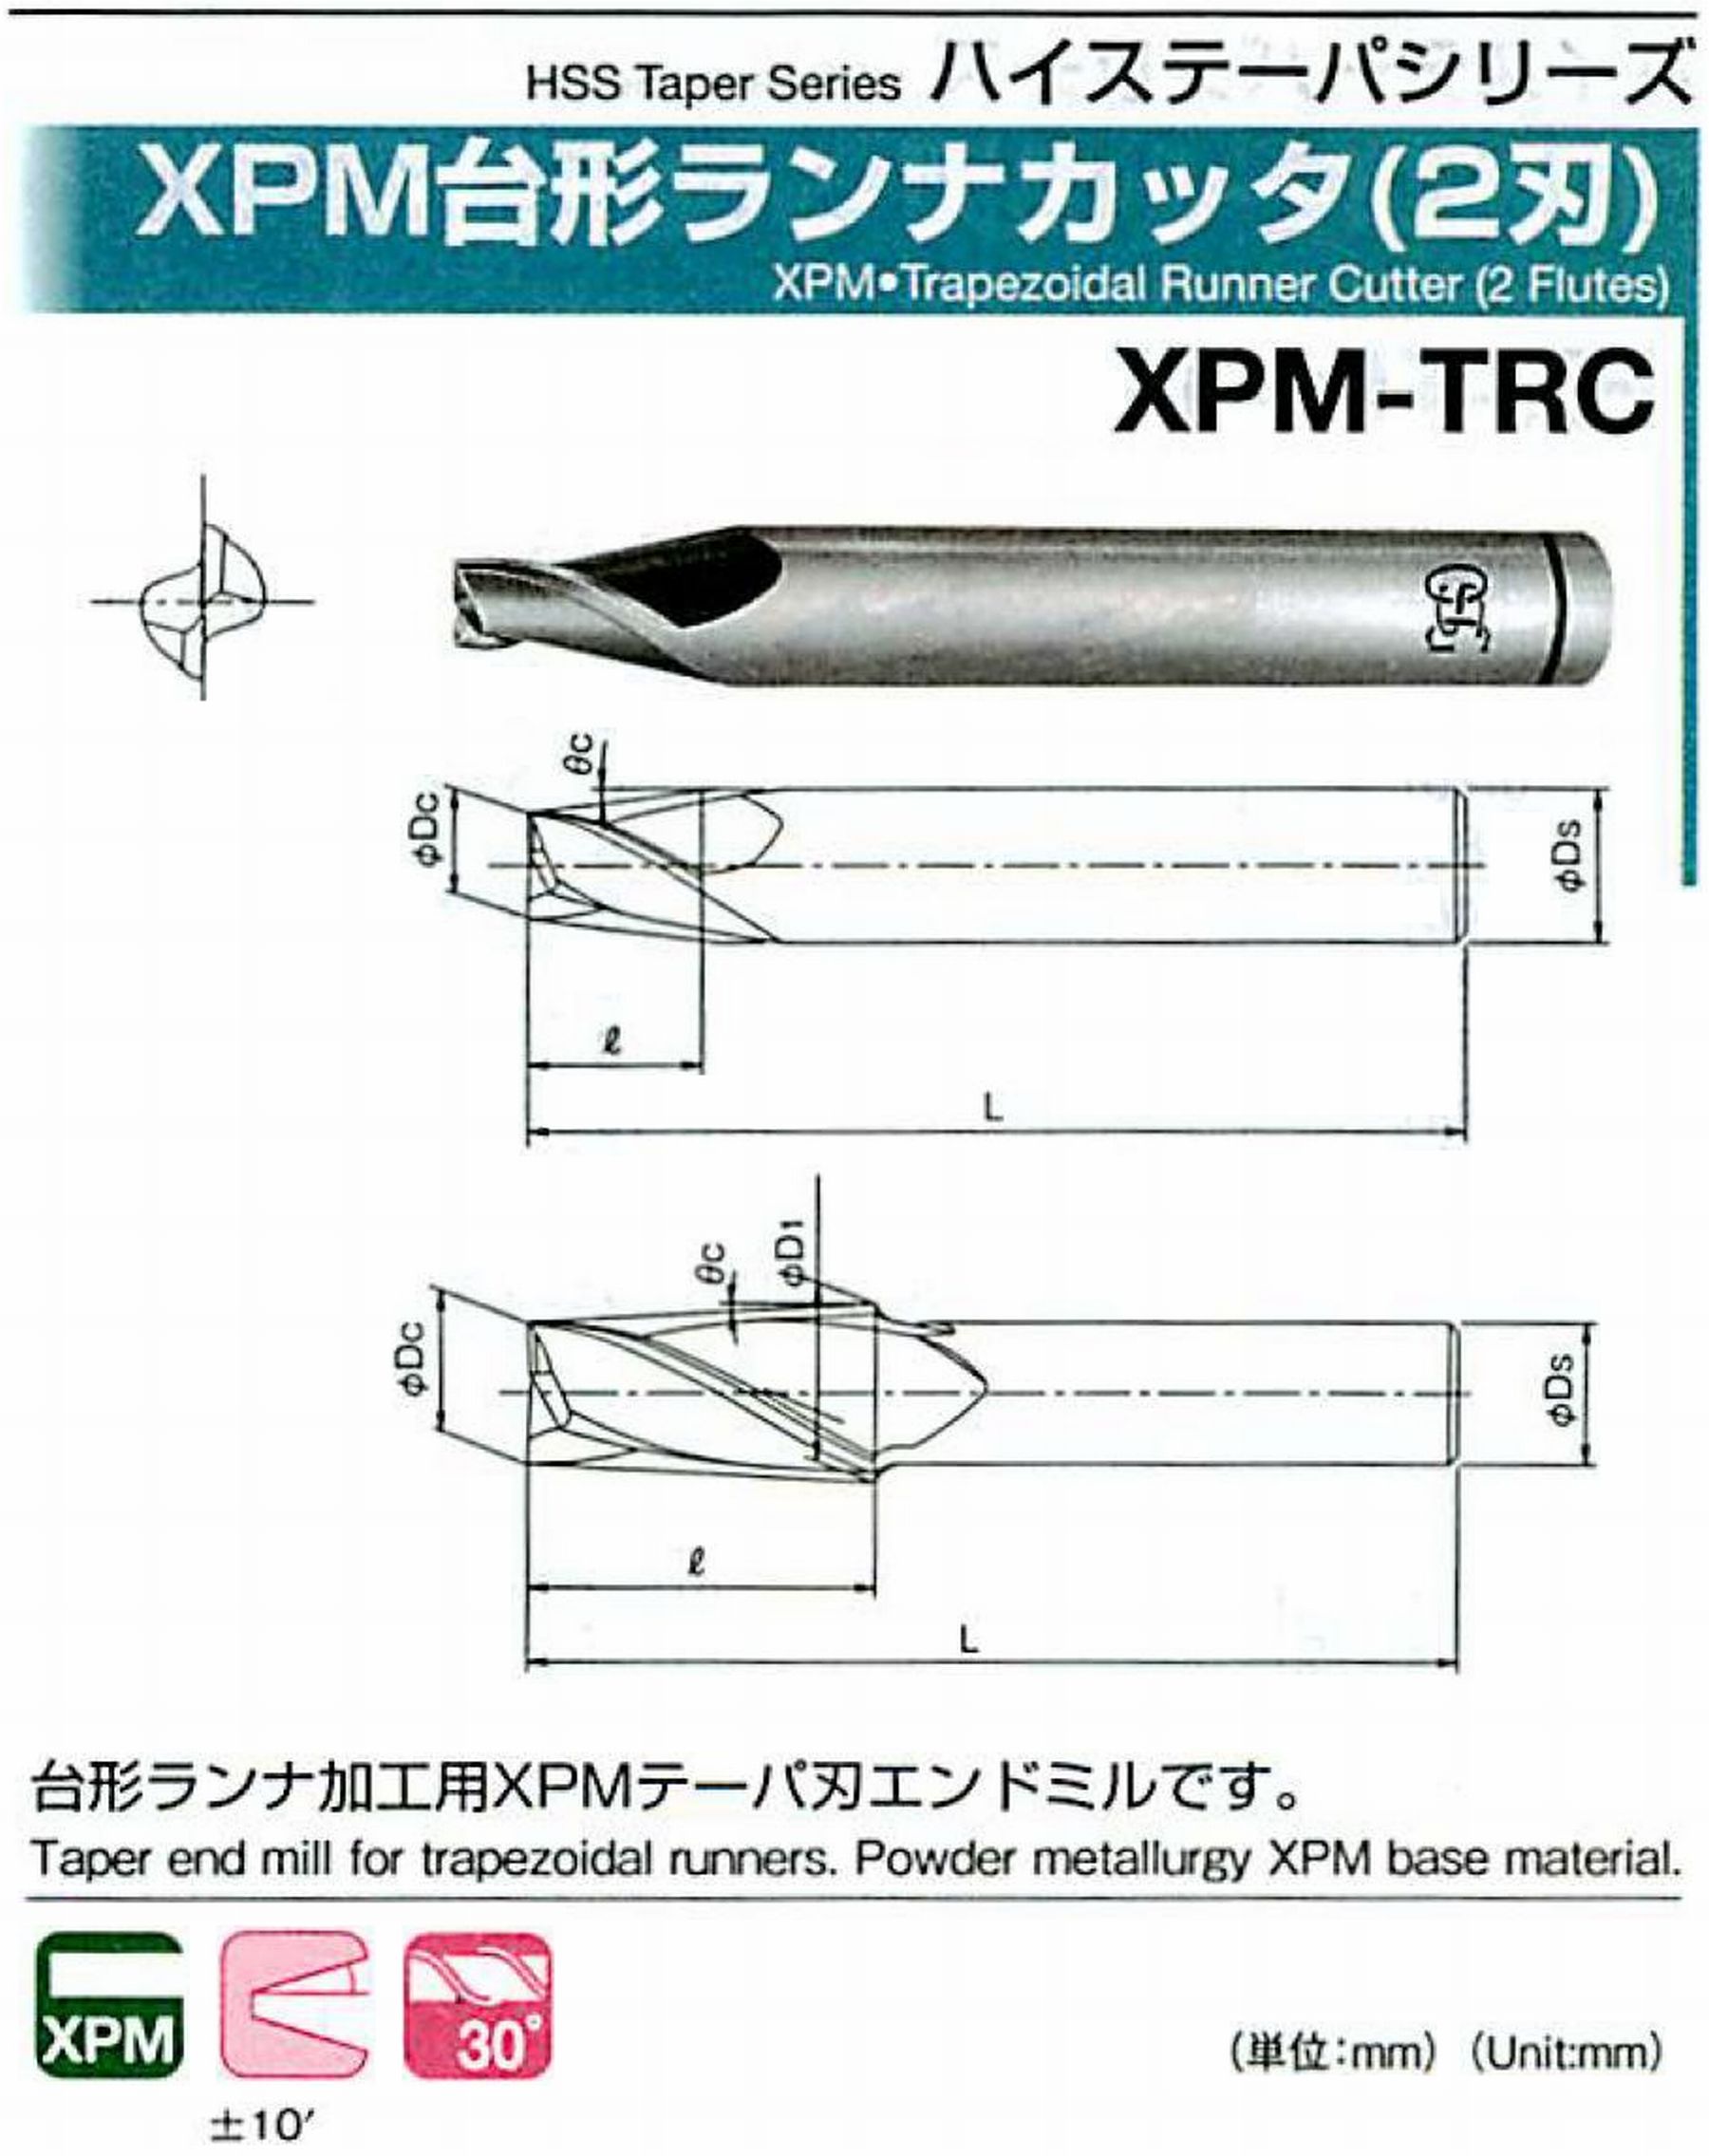 オーエスジー/OSG XPM台形ランナカッタ(2刃) XPM-TRC 外径×刃部テーパ半角3×12° 全長50 刃長6 シャンク径6mm